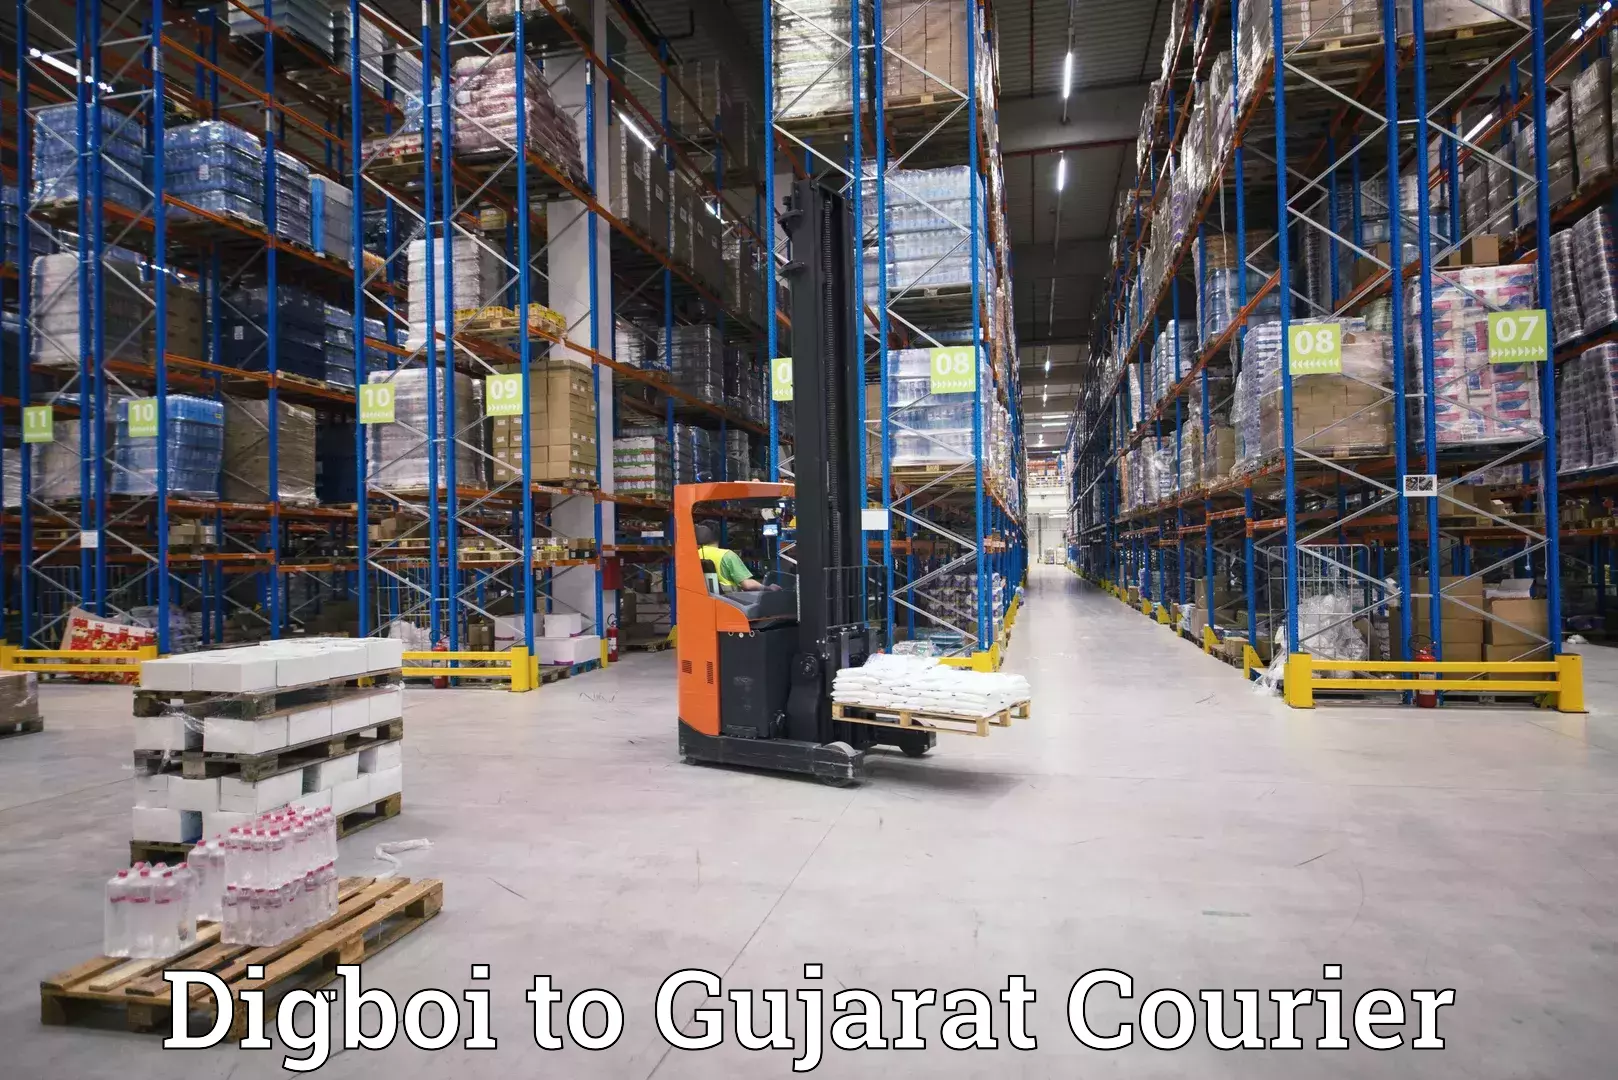 Modern courier technology Digboi to Gujarat